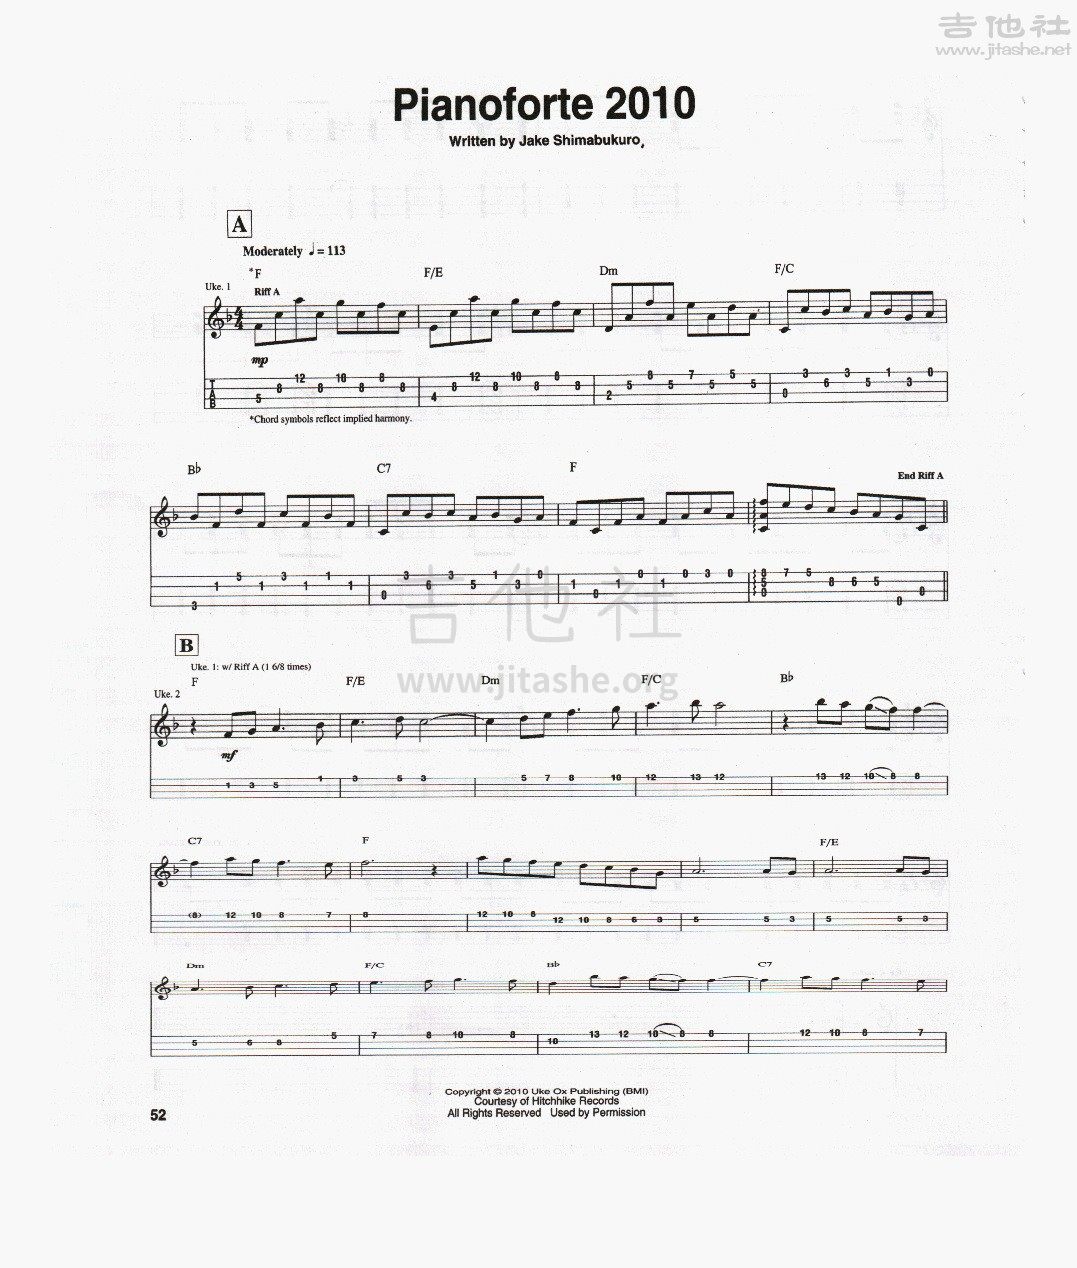 打印:Piano Forte吉他谱_Jake Shimabukuro(ジェイク・シマブクロ)_pianoforte1.jpg